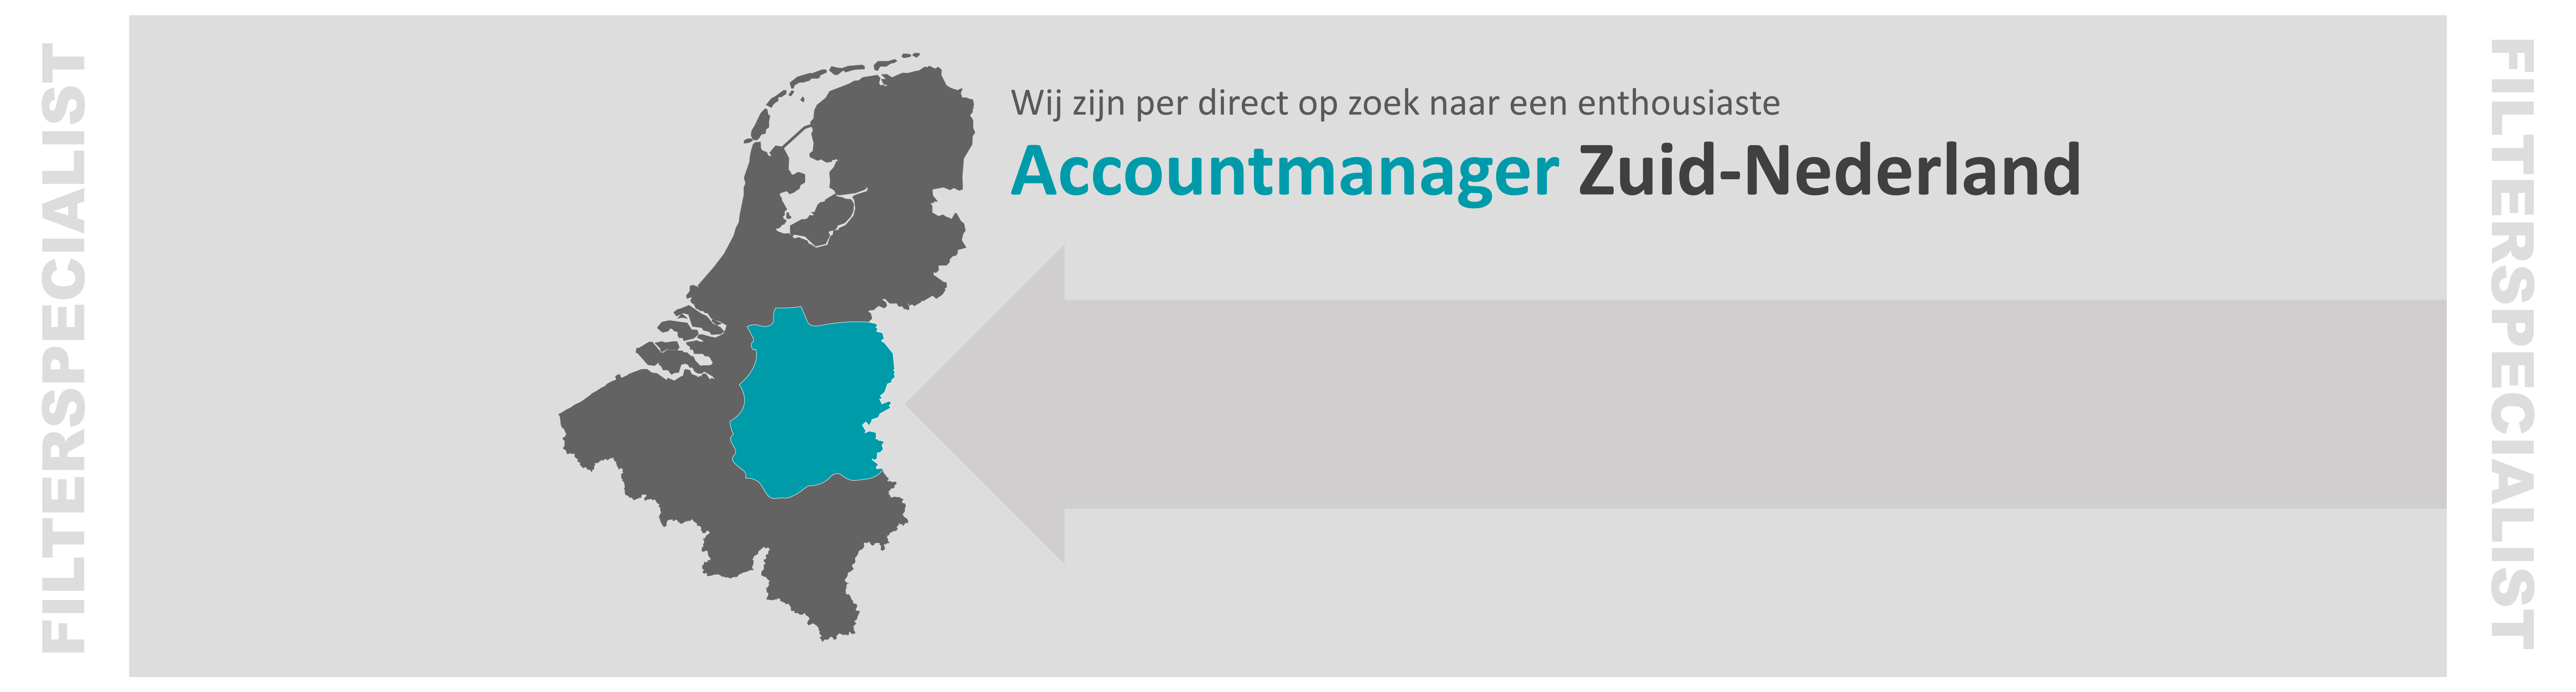 HEADER Vacature accountmanager Zuid-Nederland